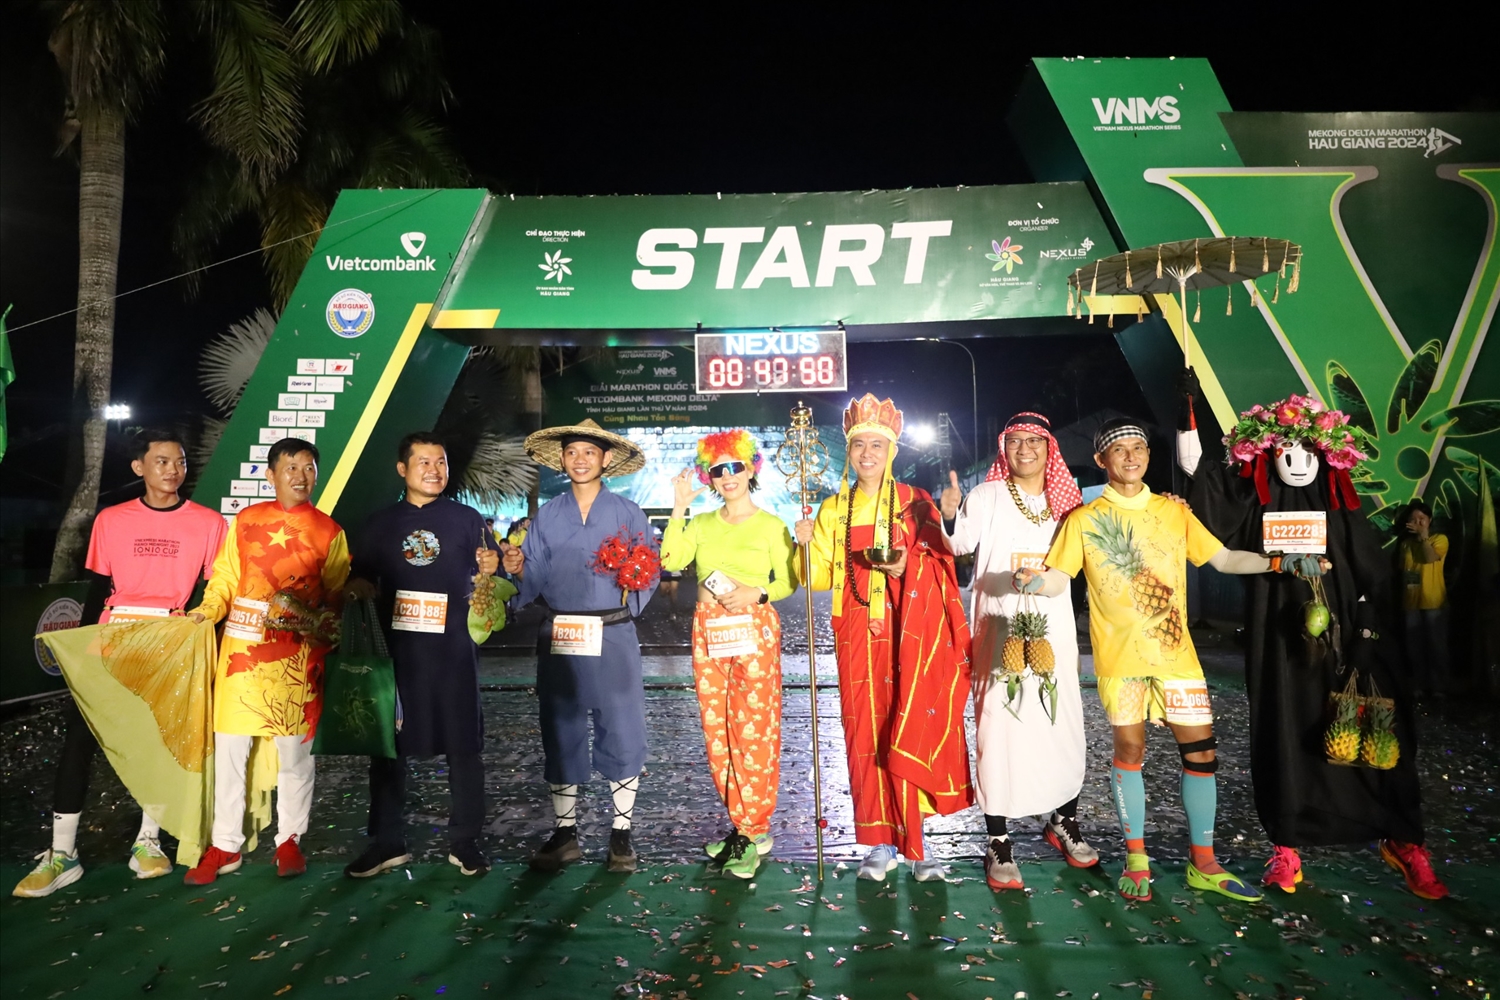 Giải marathon quốc tế “Vietcombank Mekong delta” tỉnh Hậu Giang lần thứ 5, đón chào gần 11.000 VĐV cùng tranh tài 6 cự ly thi đấu: 1,1km (trẻ em 9-11 tuổi), 2,4km (thiếu niên 12-15 tuổi), 5km, 10km, 21km và 42km